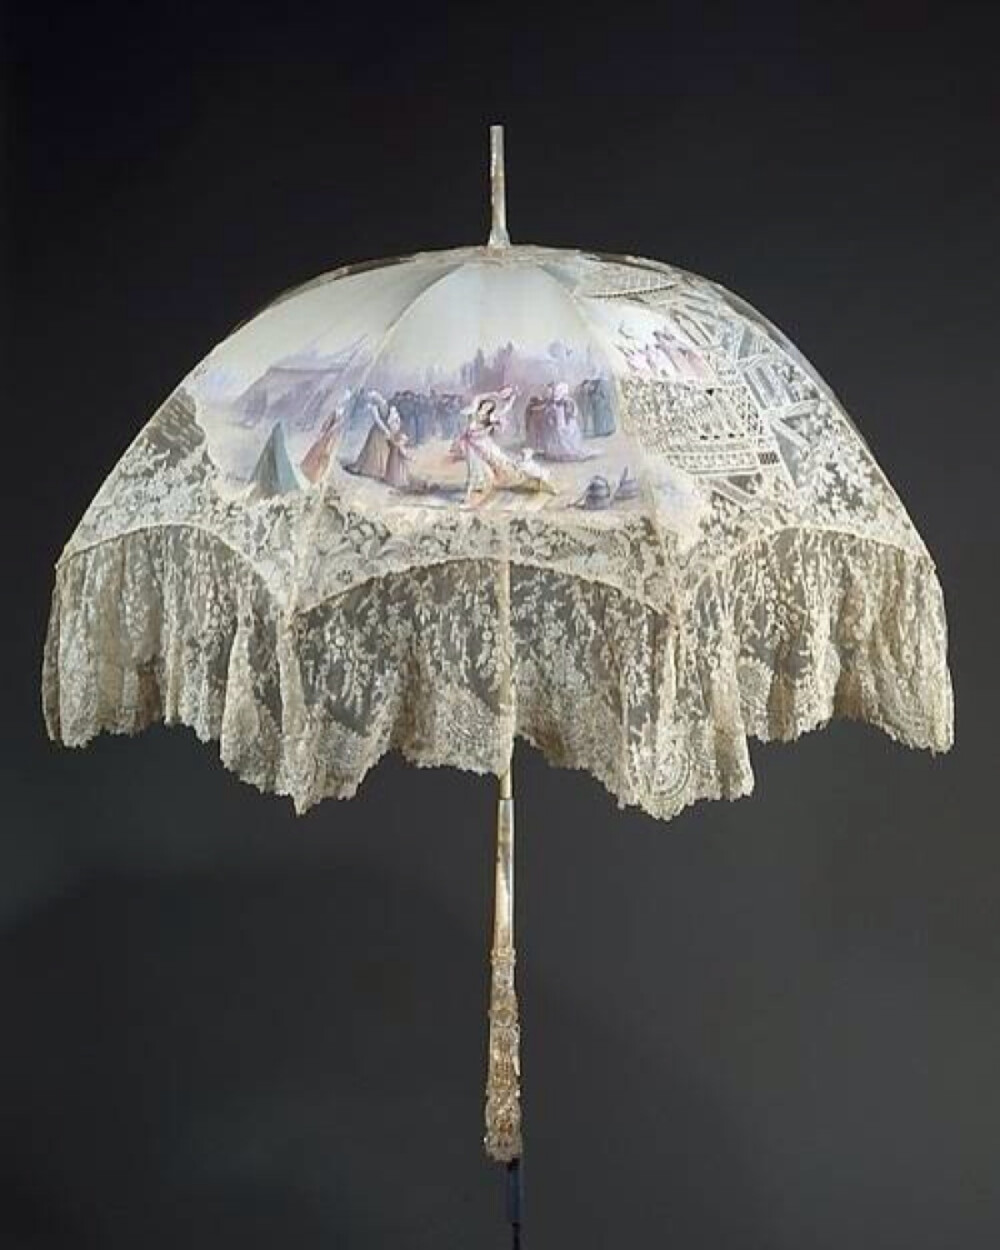 手绘的装饰伞，纯手绘的图案，真丝蕾丝＋珍珠母贝的材质，非常精美。 ca. 1896。